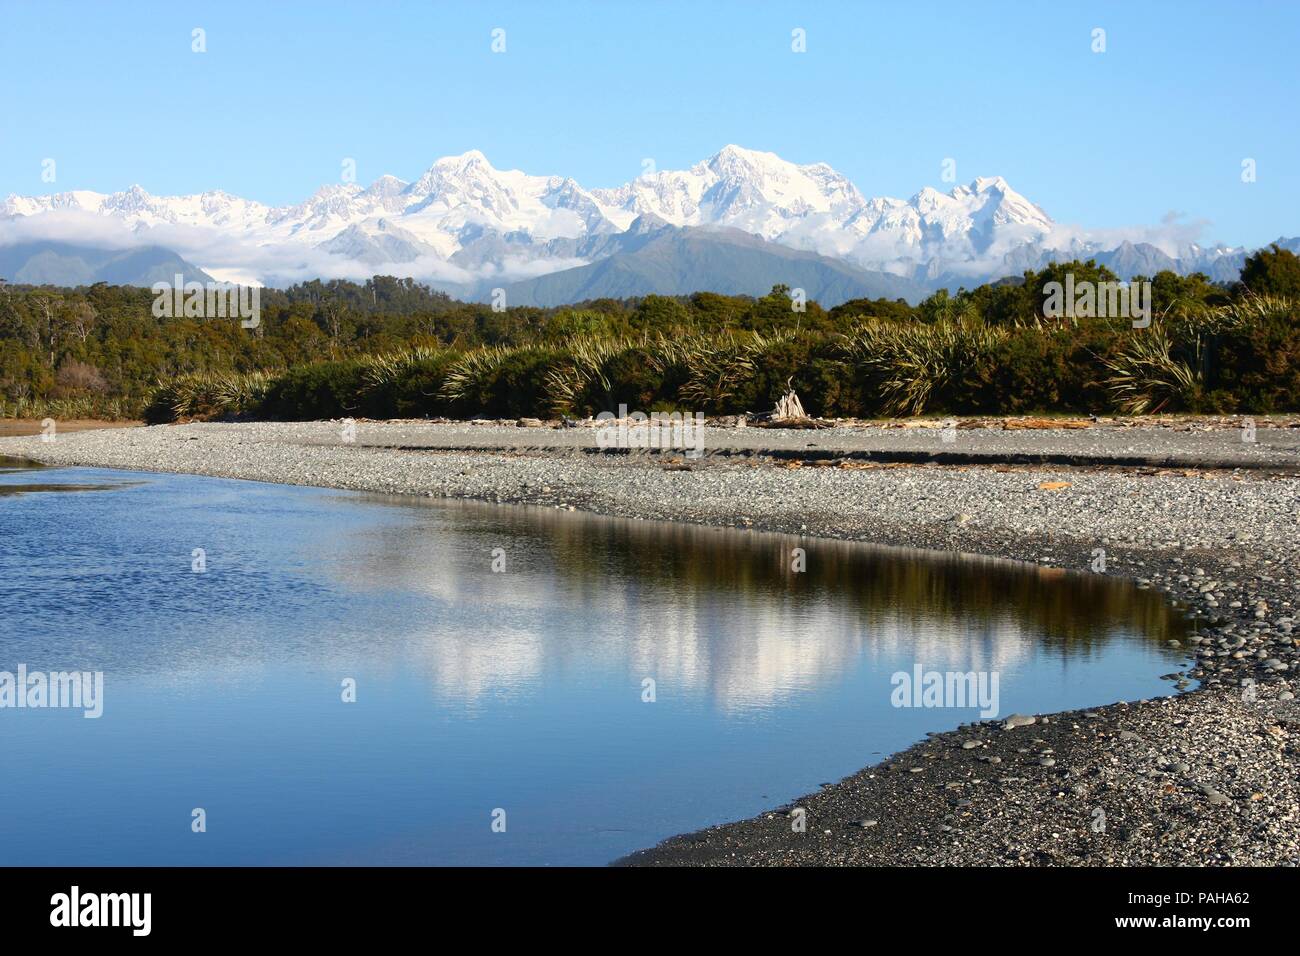 La Nouvelle-Zélande. Paysage de montagne y compris parc Aoraki Mt. Cook et Mt. Tasman des Alpes du Sud. Montagnes aux sommets enneigés. Banque D'Images